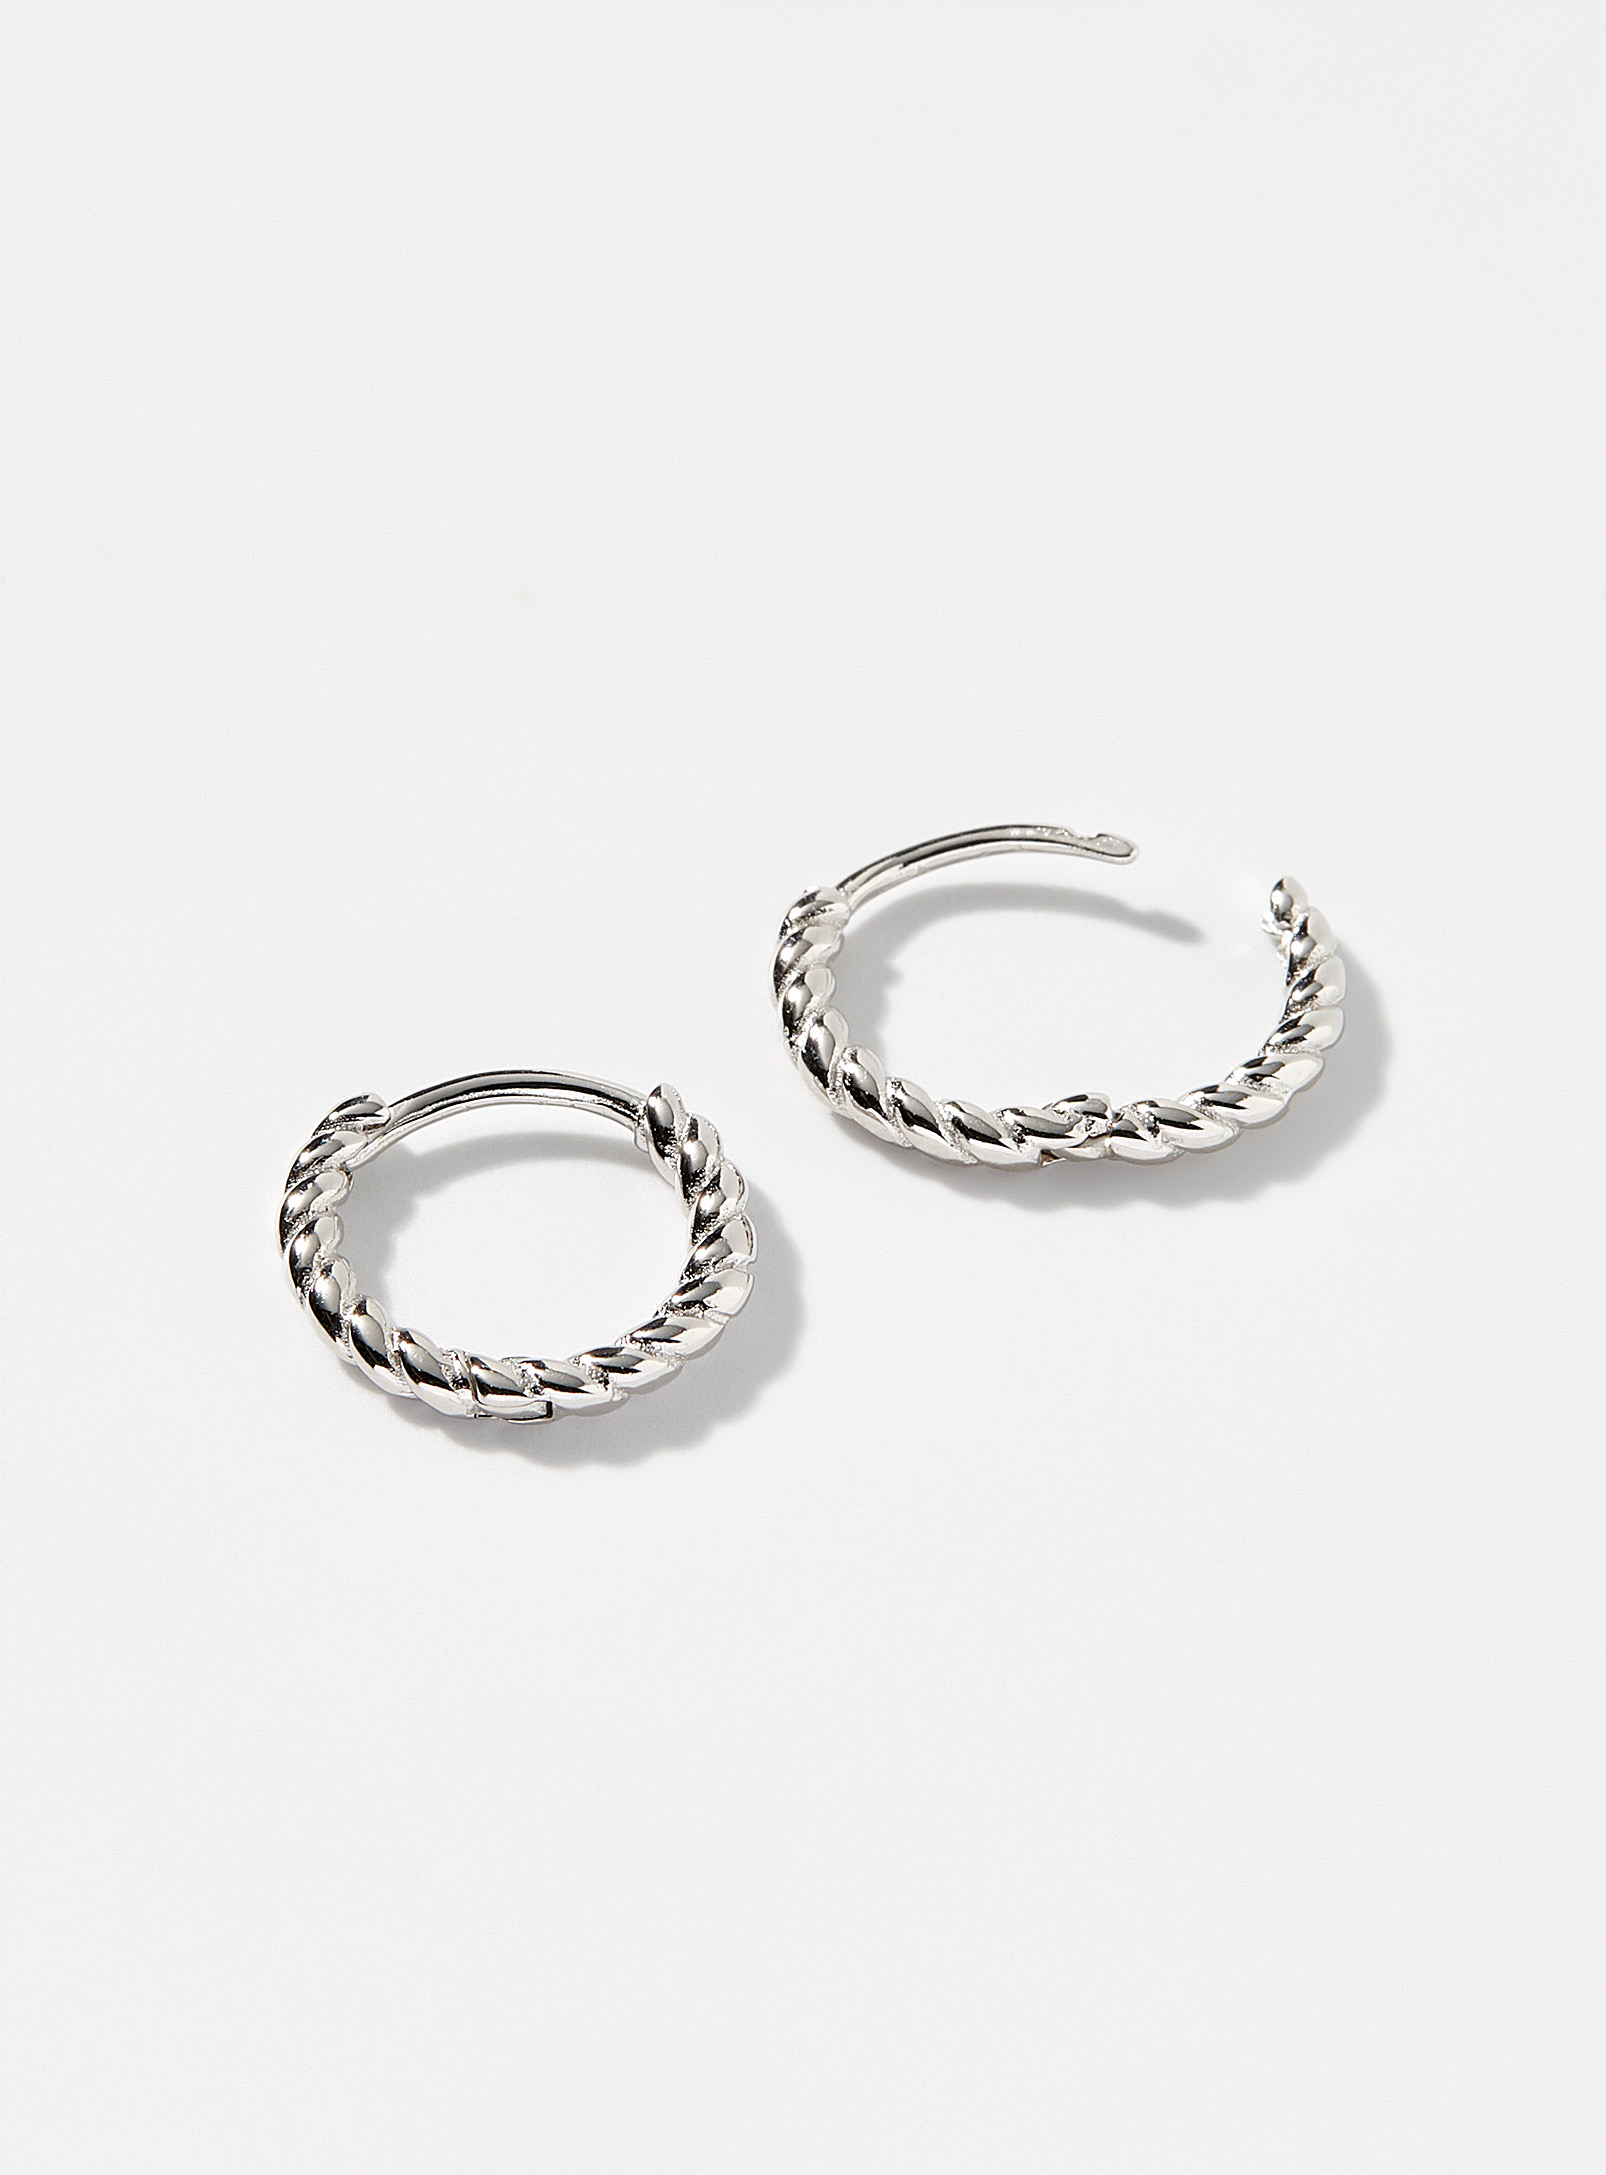 Simons - Women's Small twisted silver Hoop Earrings